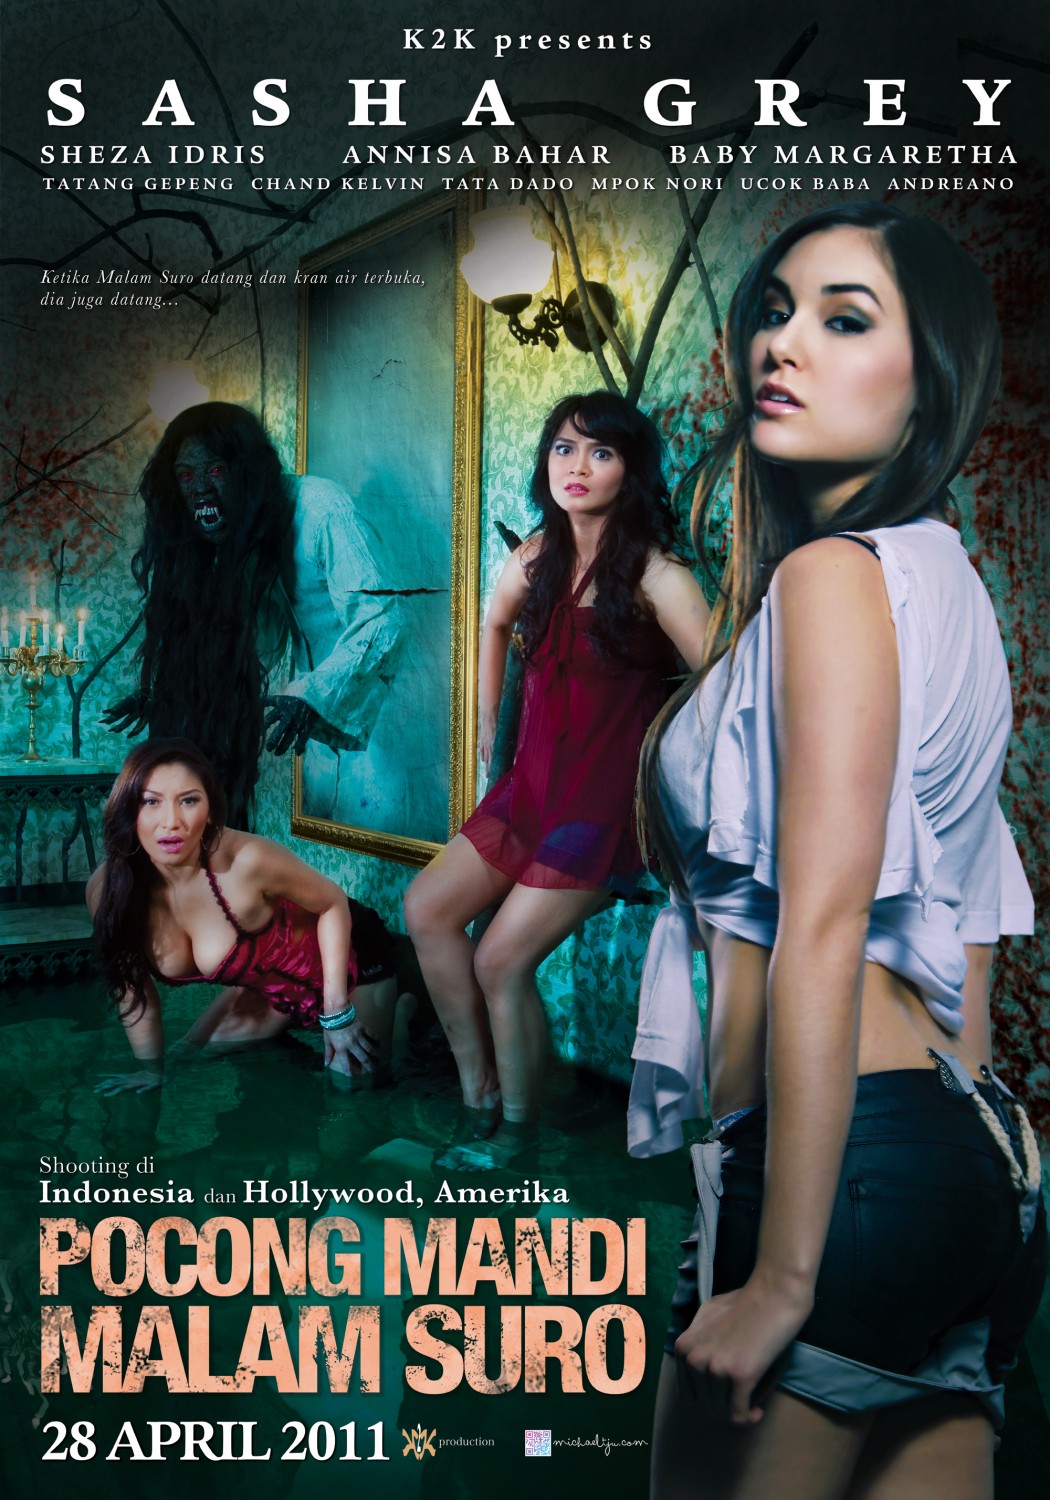 Extra Large Movie Poster Image for Pocong mandi goyang pinggul 